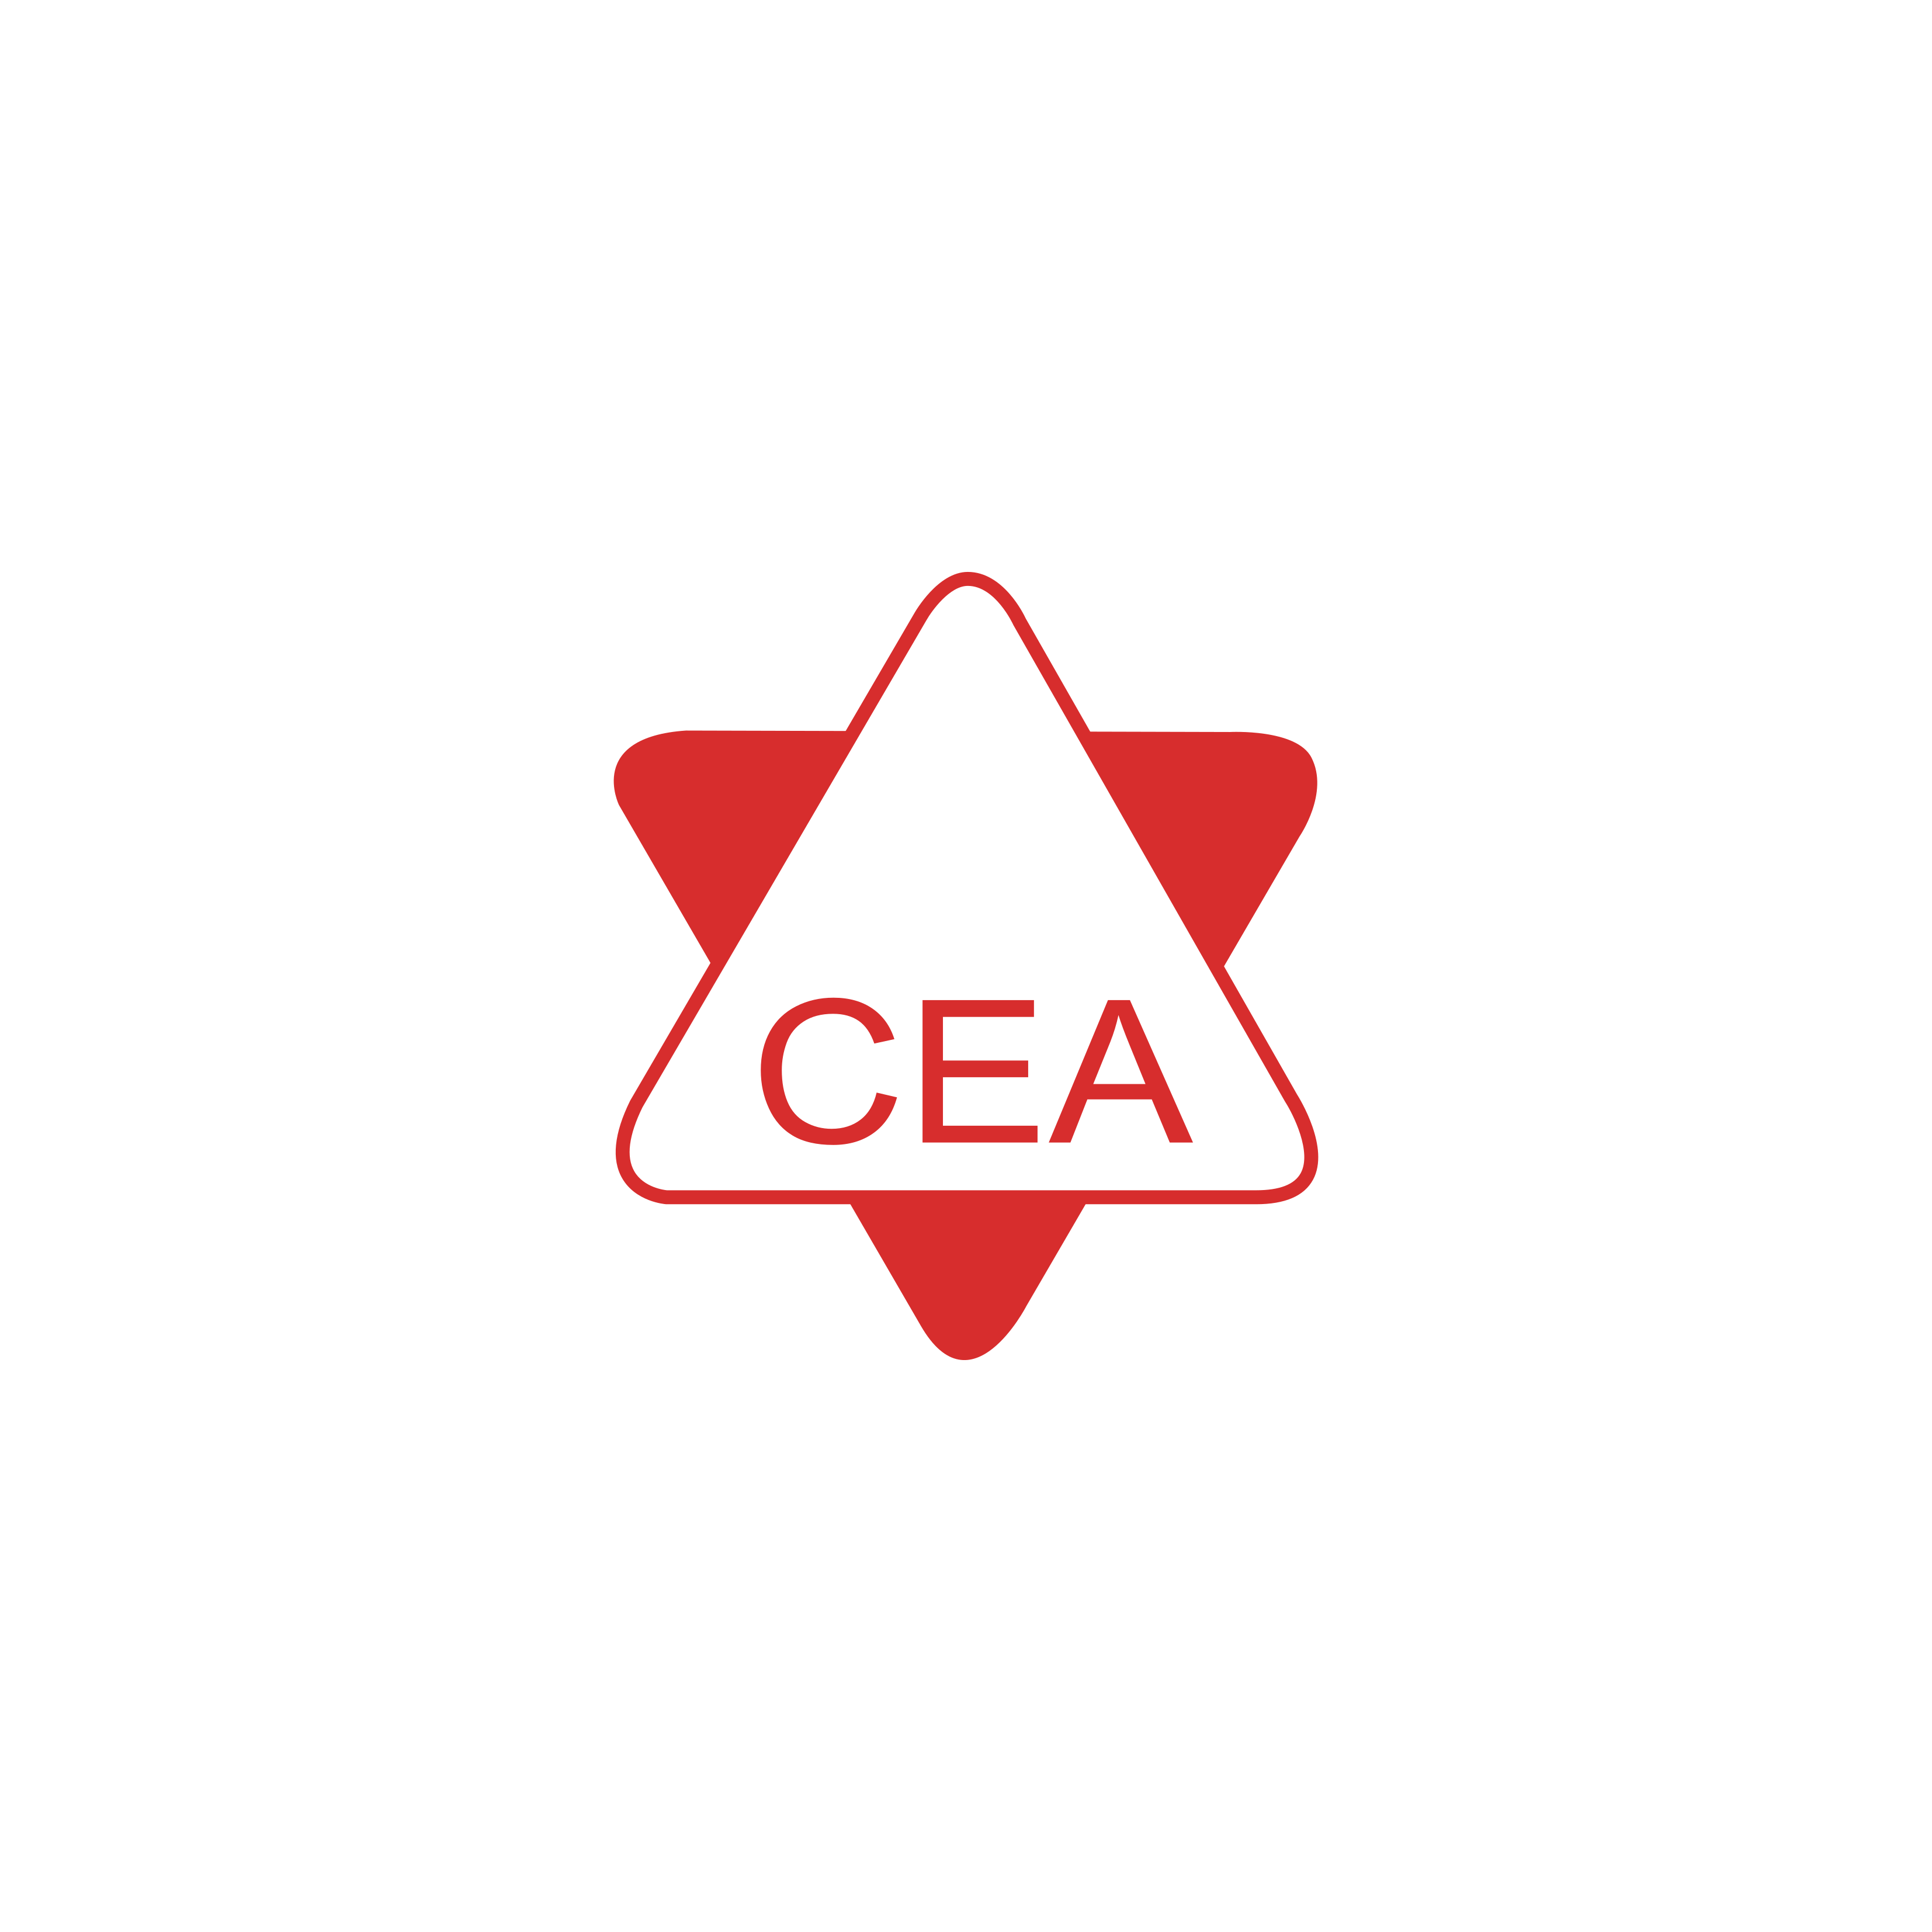 cea-logo-ai-file.png